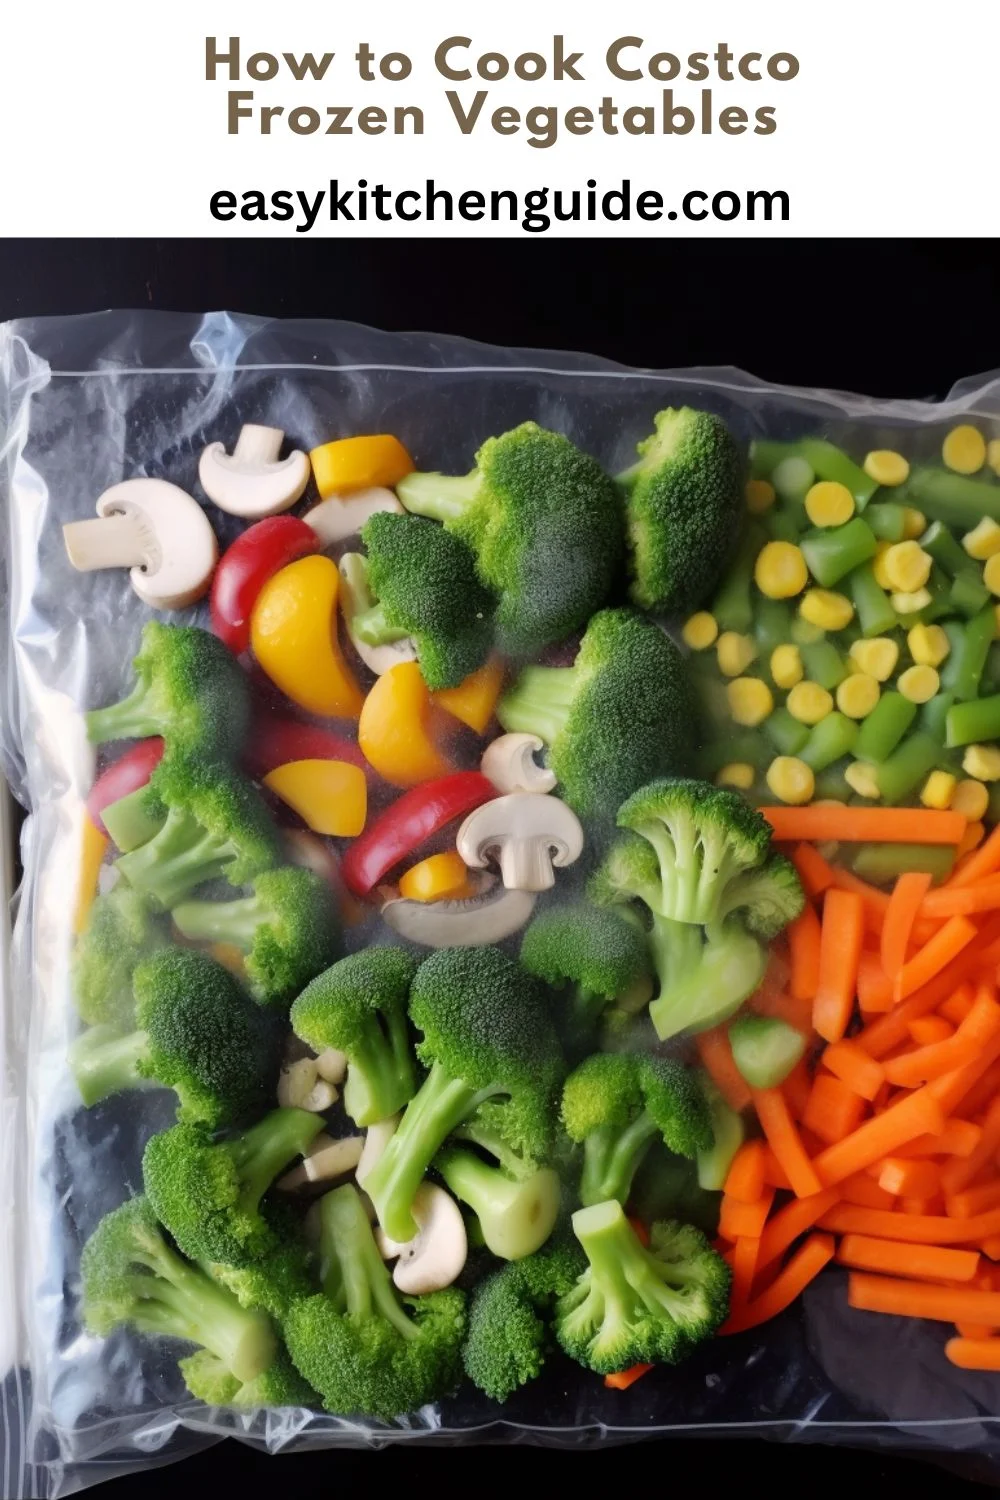 How to Cook Costco Frozen Vegetables